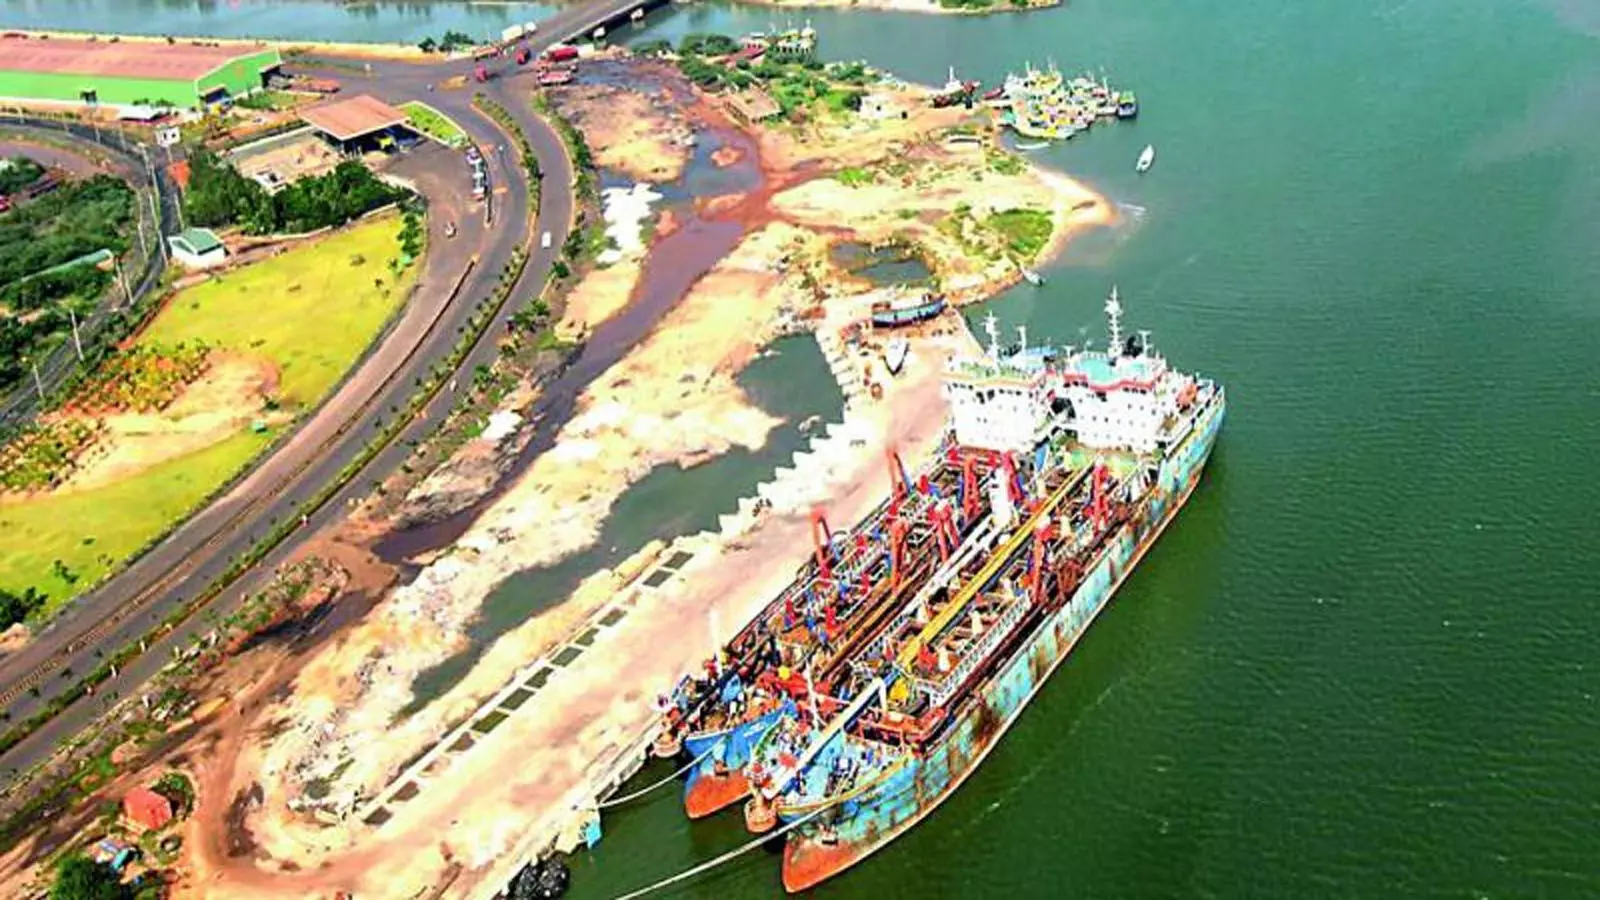 कृष्णापत्तनम पोर्ट: देश का दूसरा सबसे बड़ा निजी बंदरगाह, बनेगा इंडस्ट्रियल सेंटर